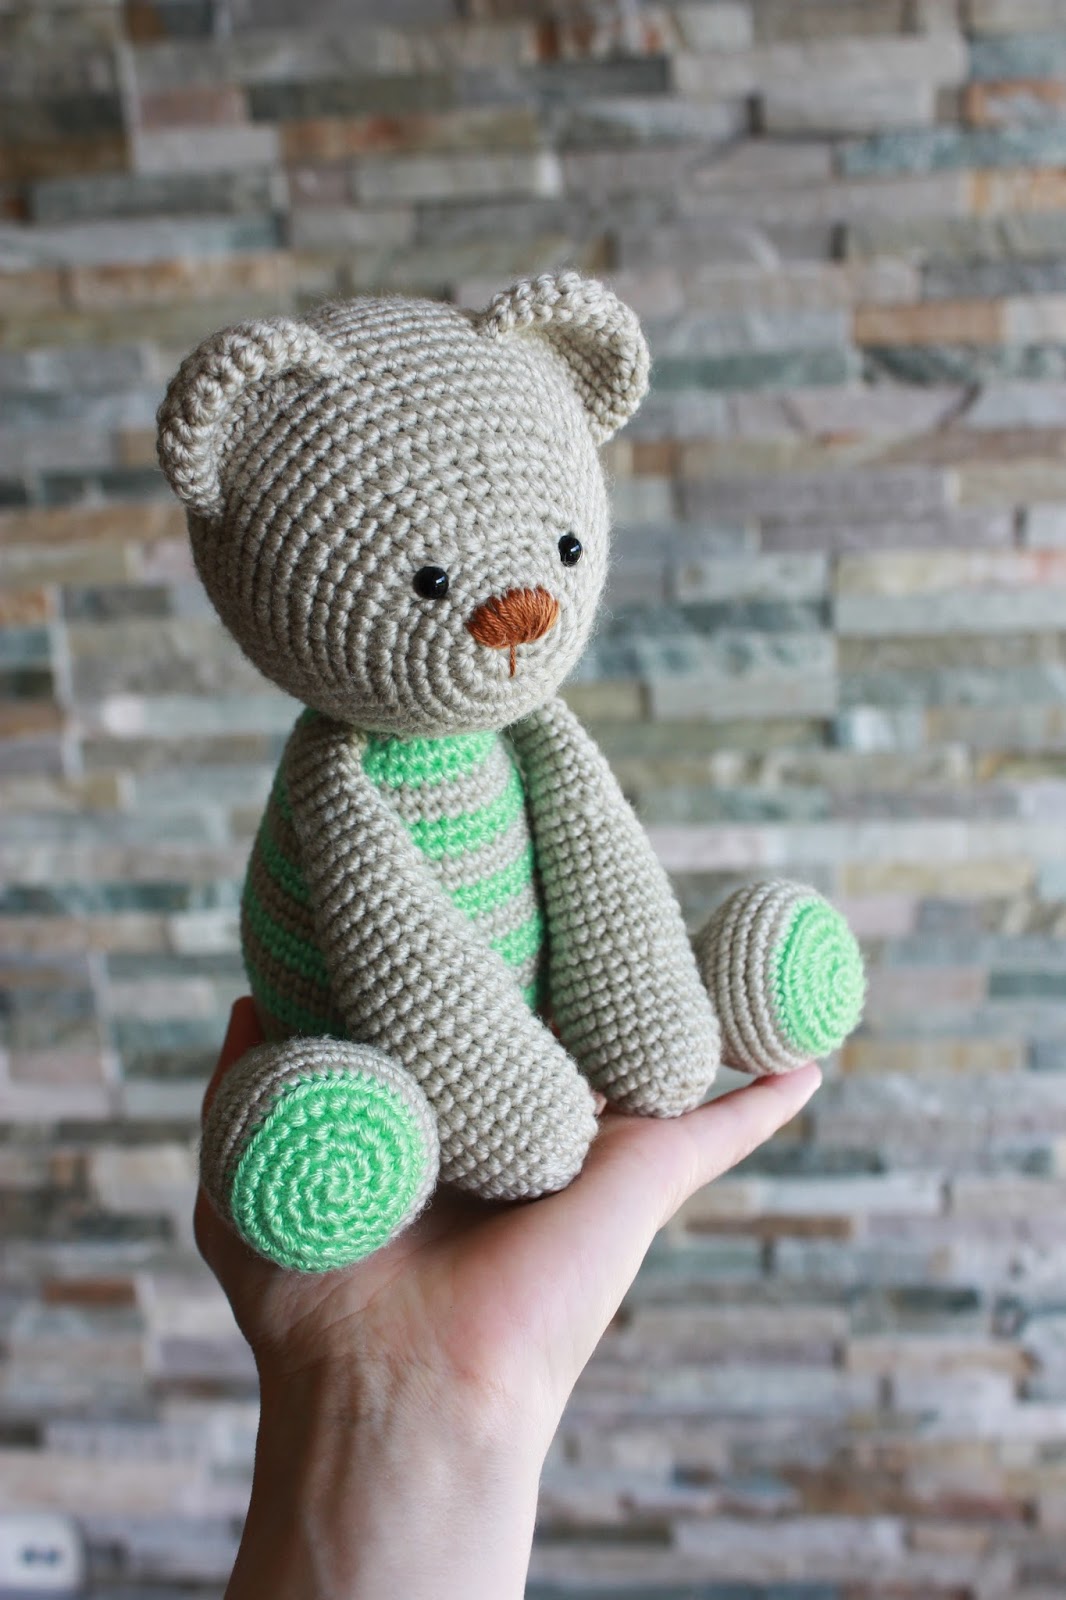 teddy bear pattern instructions